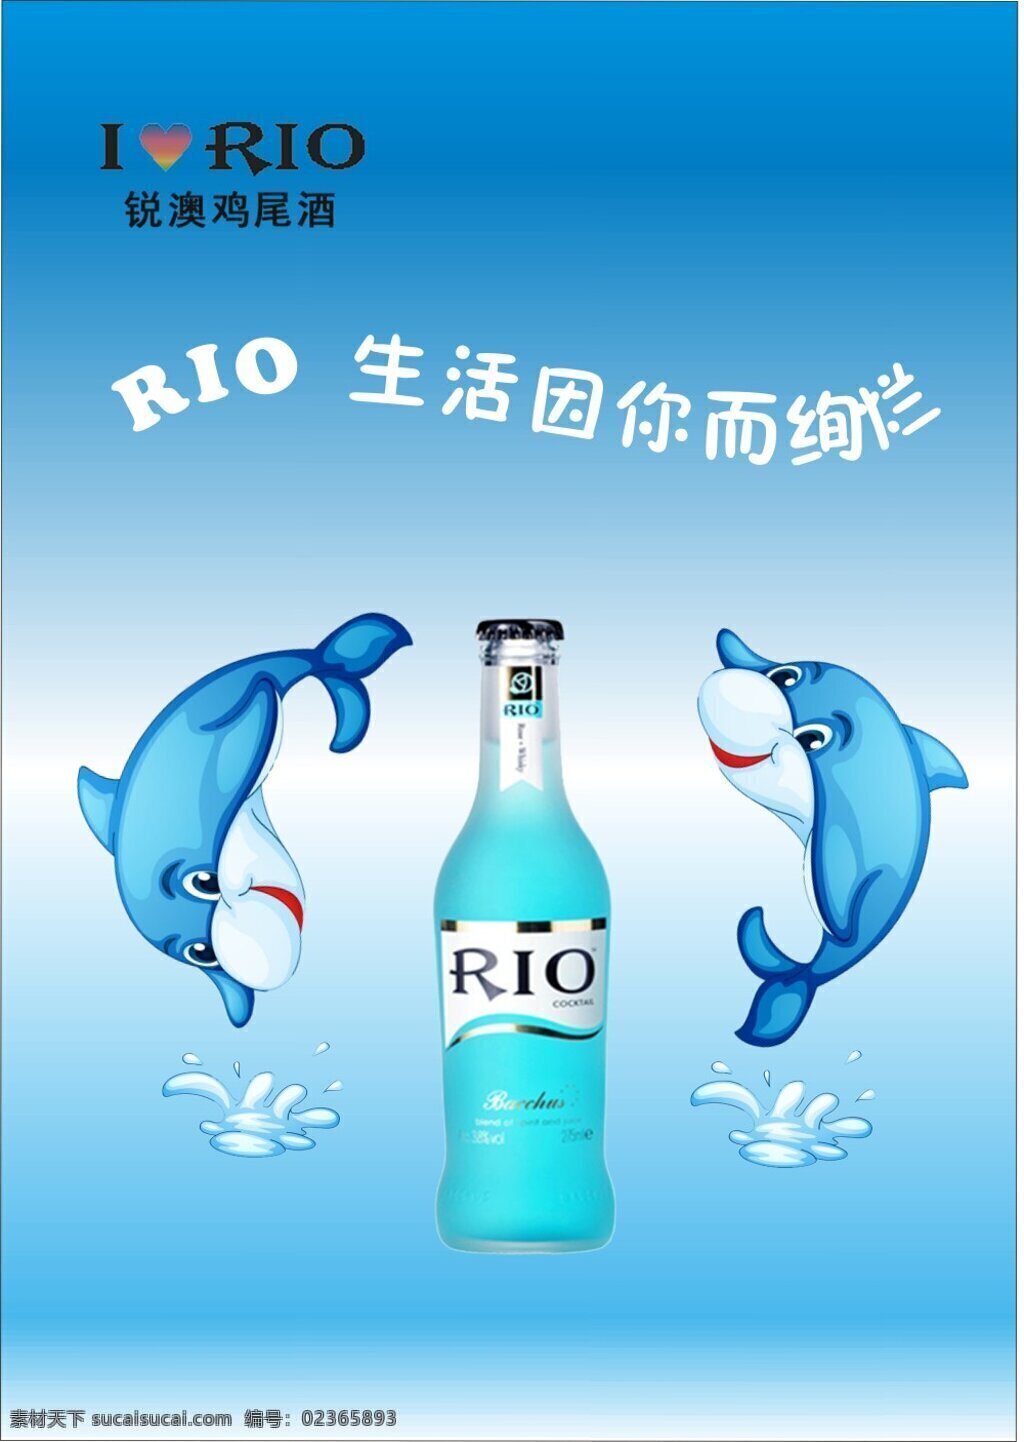 rio海报 鸡尾酒 海报 招贴广告 青色 天蓝色